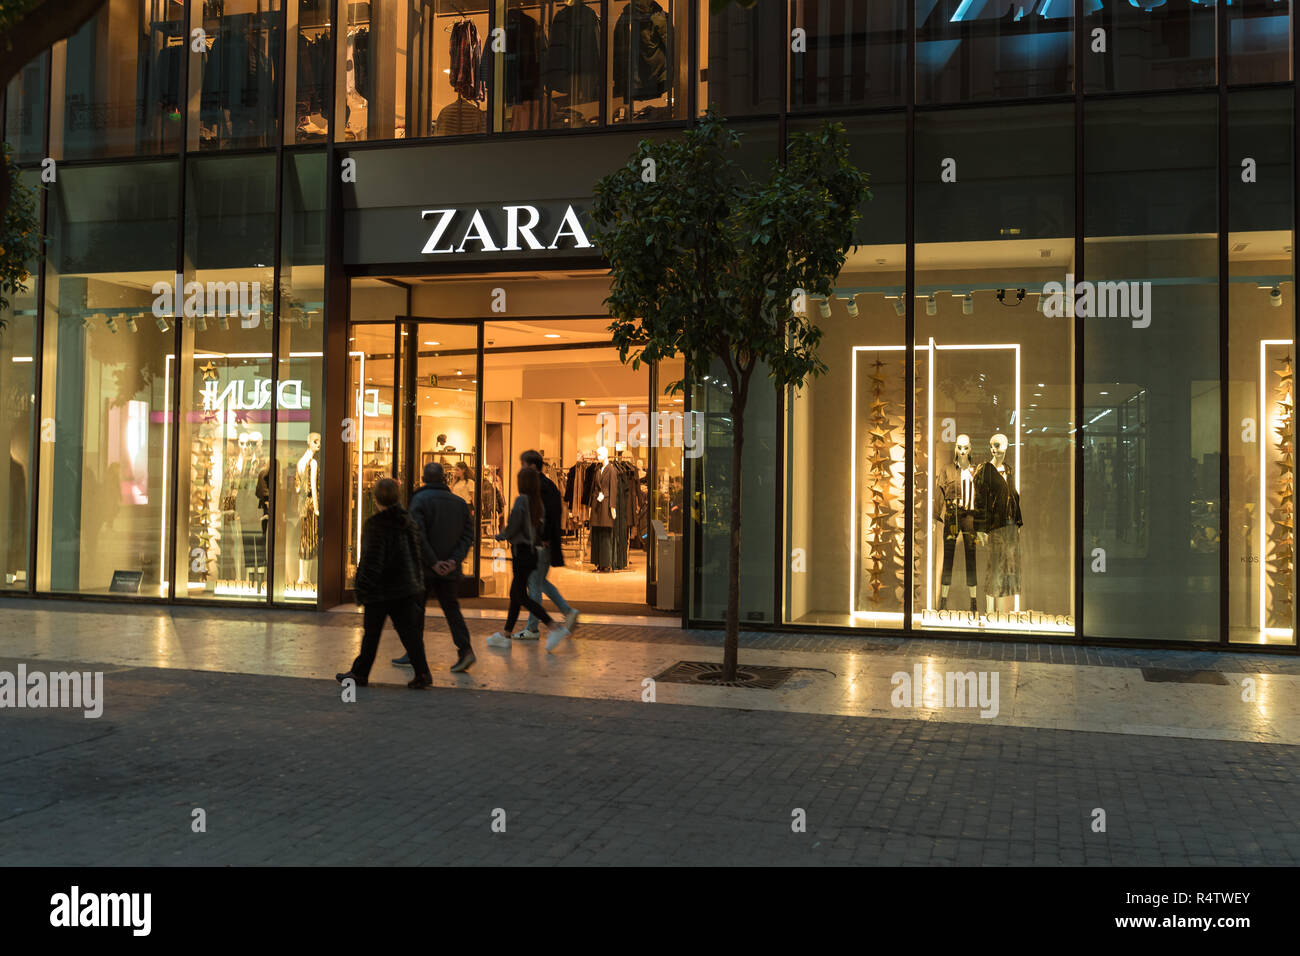 Valencia, Espagne - 25 novembre 2018 : Zara magasin à Valence. Zara est un  détaillant de vêtements et accessoires magasin Zara. Les gens marcher dans  et hors Photo Stock - Alamy